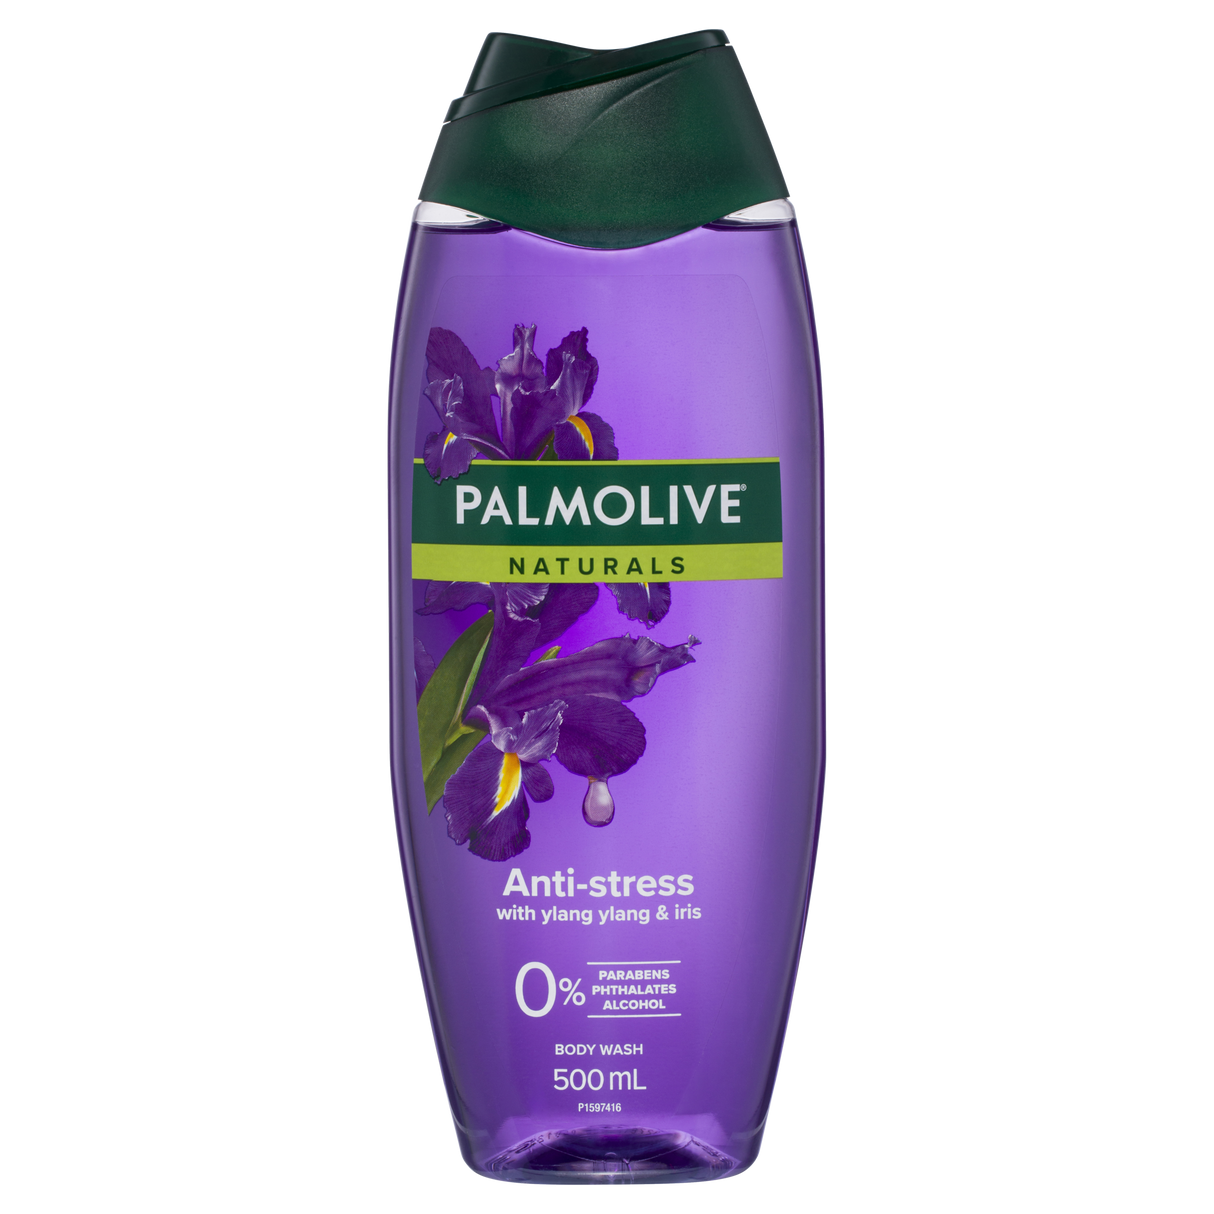 Palmolive Naturals Body Wash Anti-Stress with Ylang Ylang & Iris 500ml